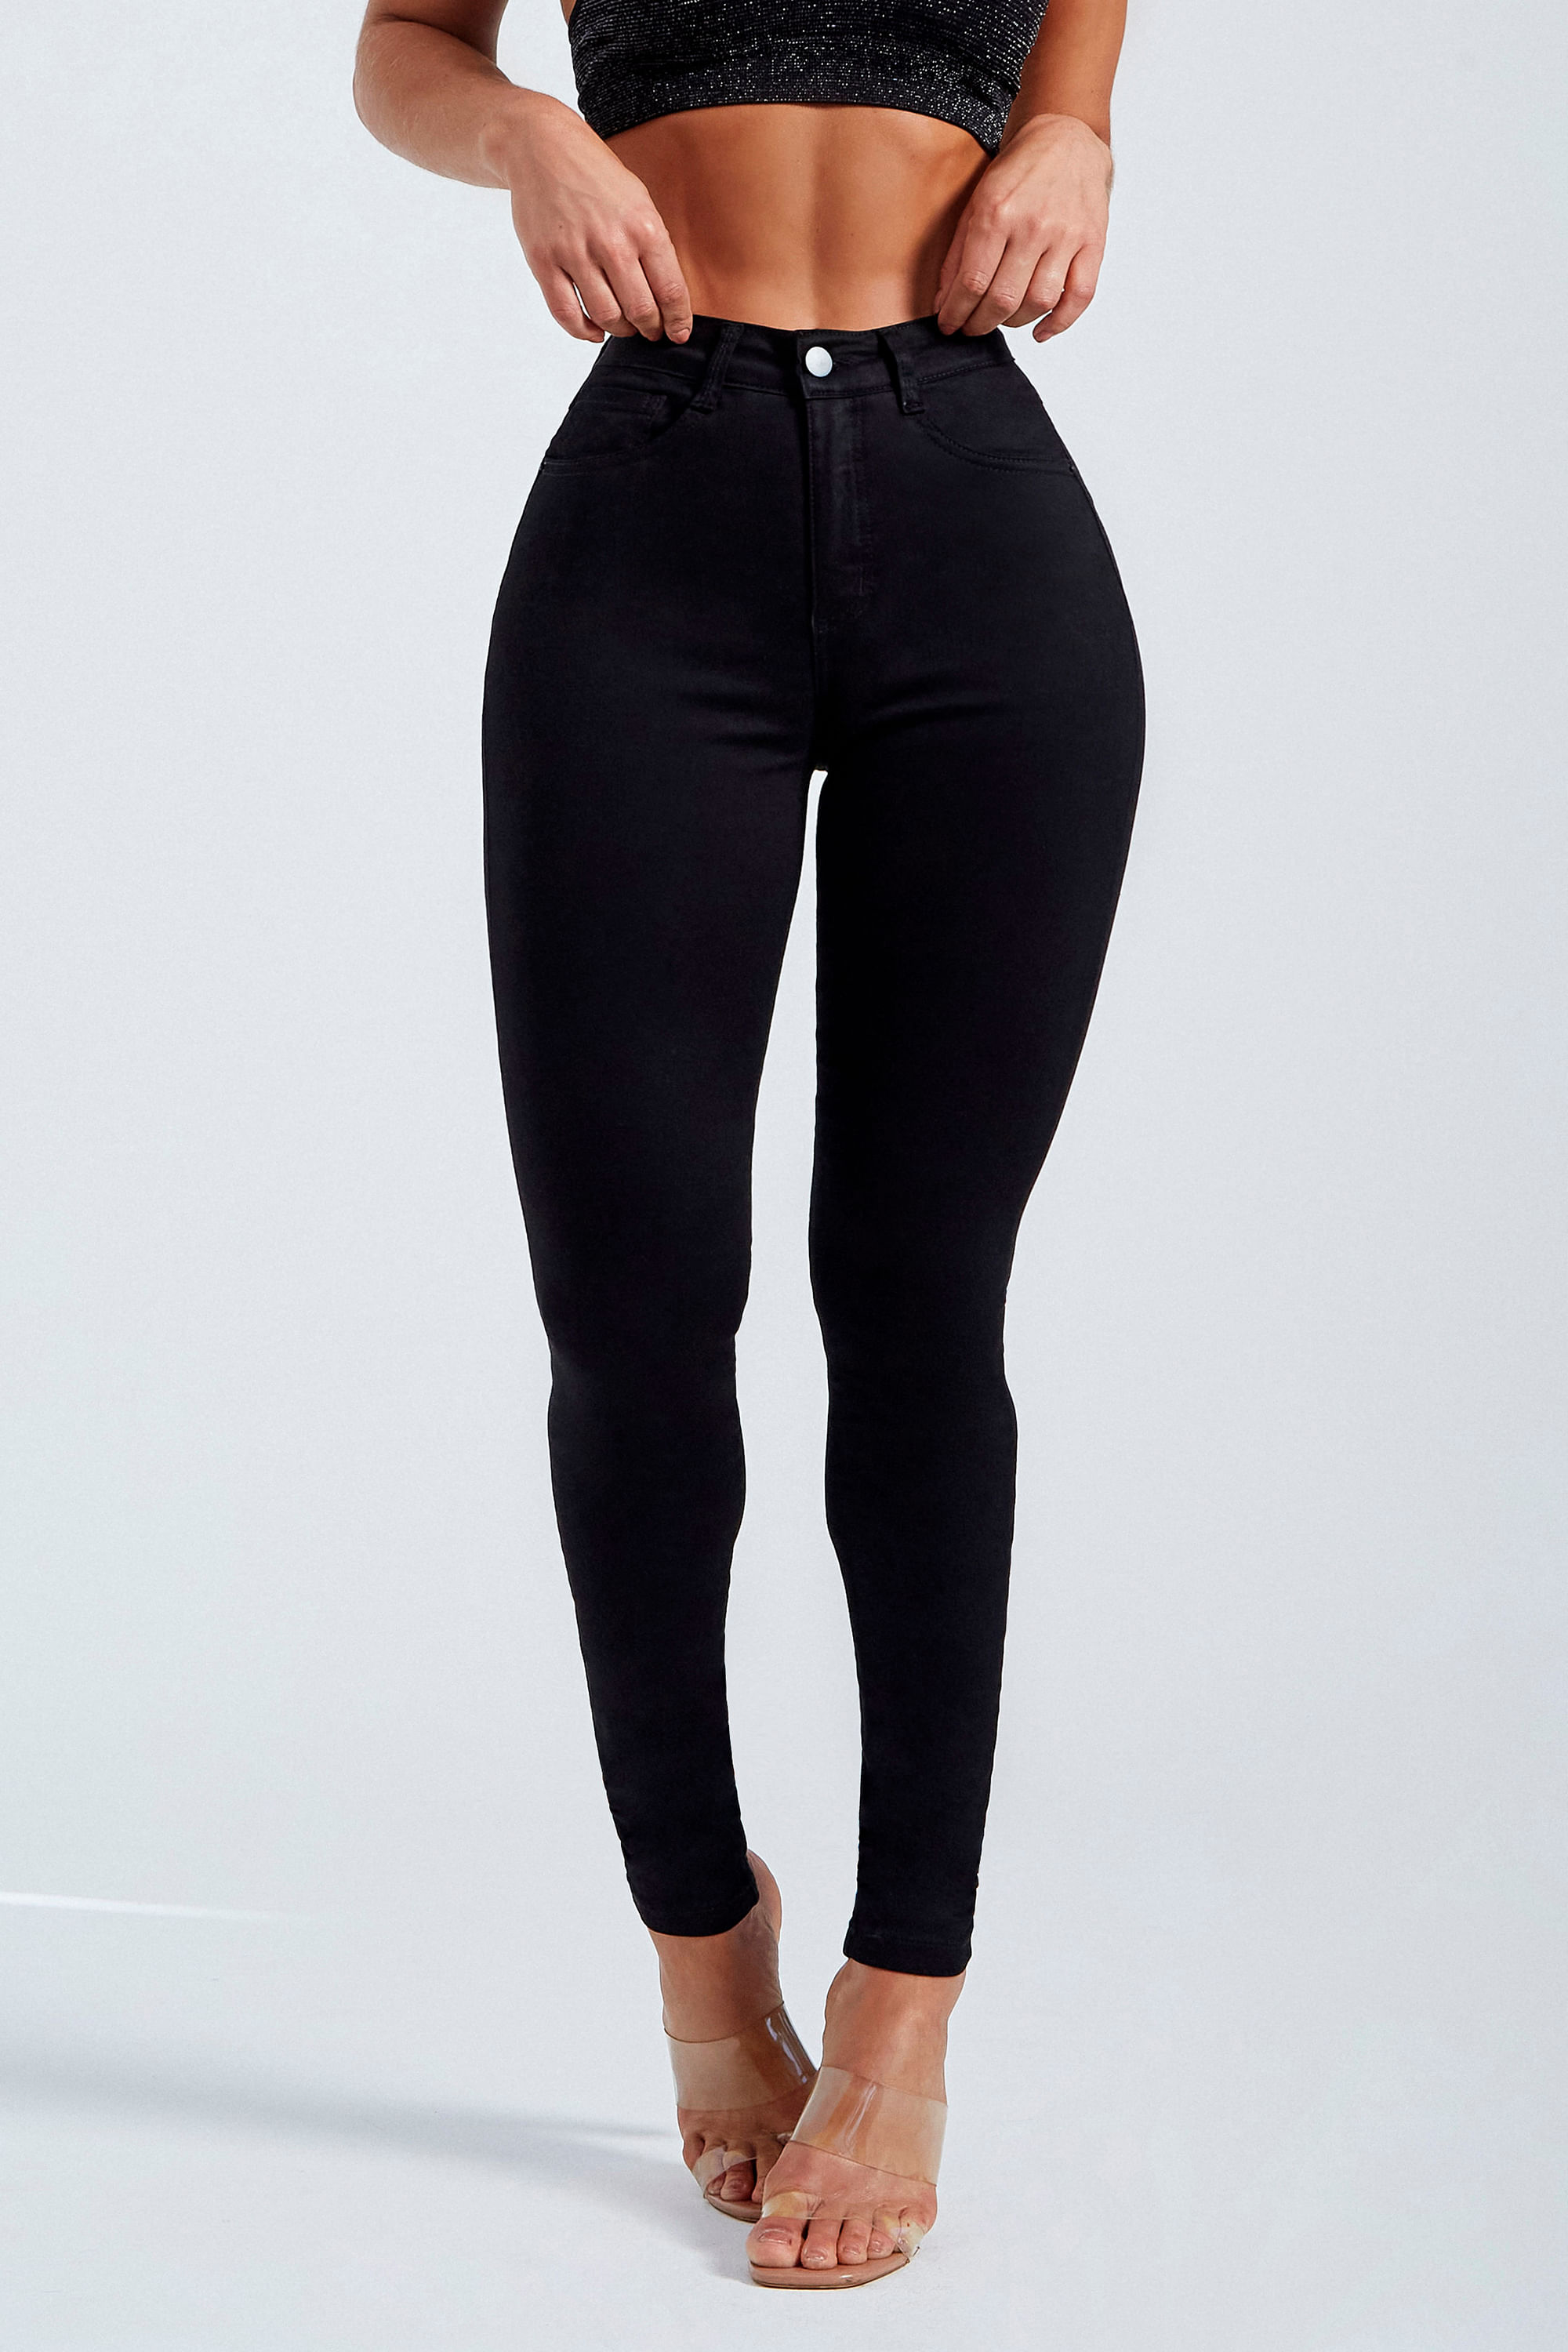 Calça jeans feminina preta curta